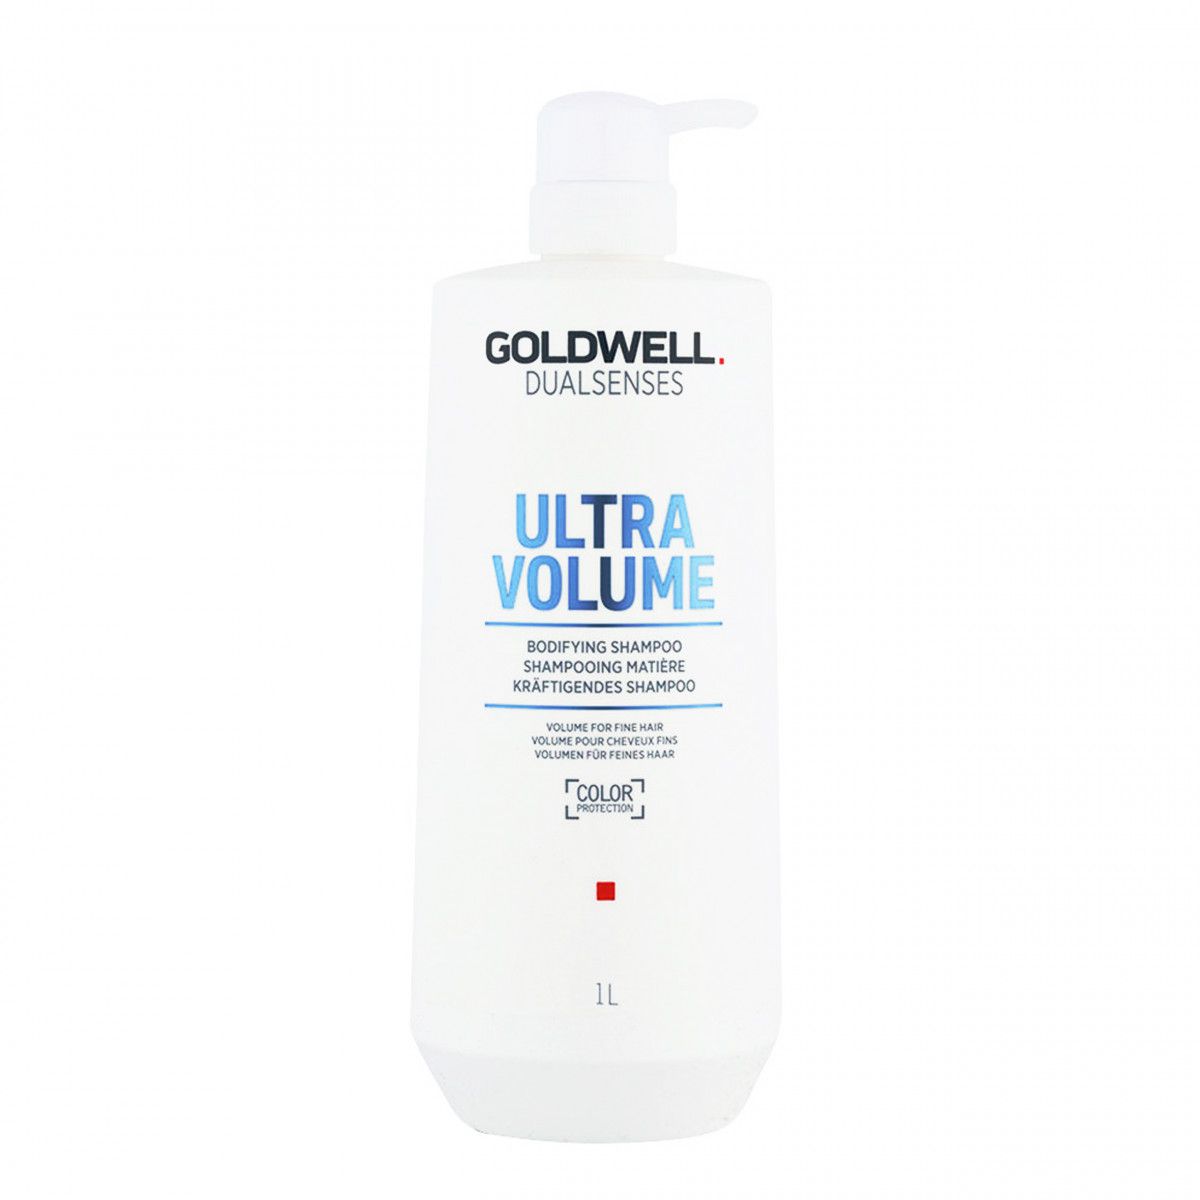 Goldwell Ultra Volume delikatny szampon w żelu do włosów cienkich 1000 ml